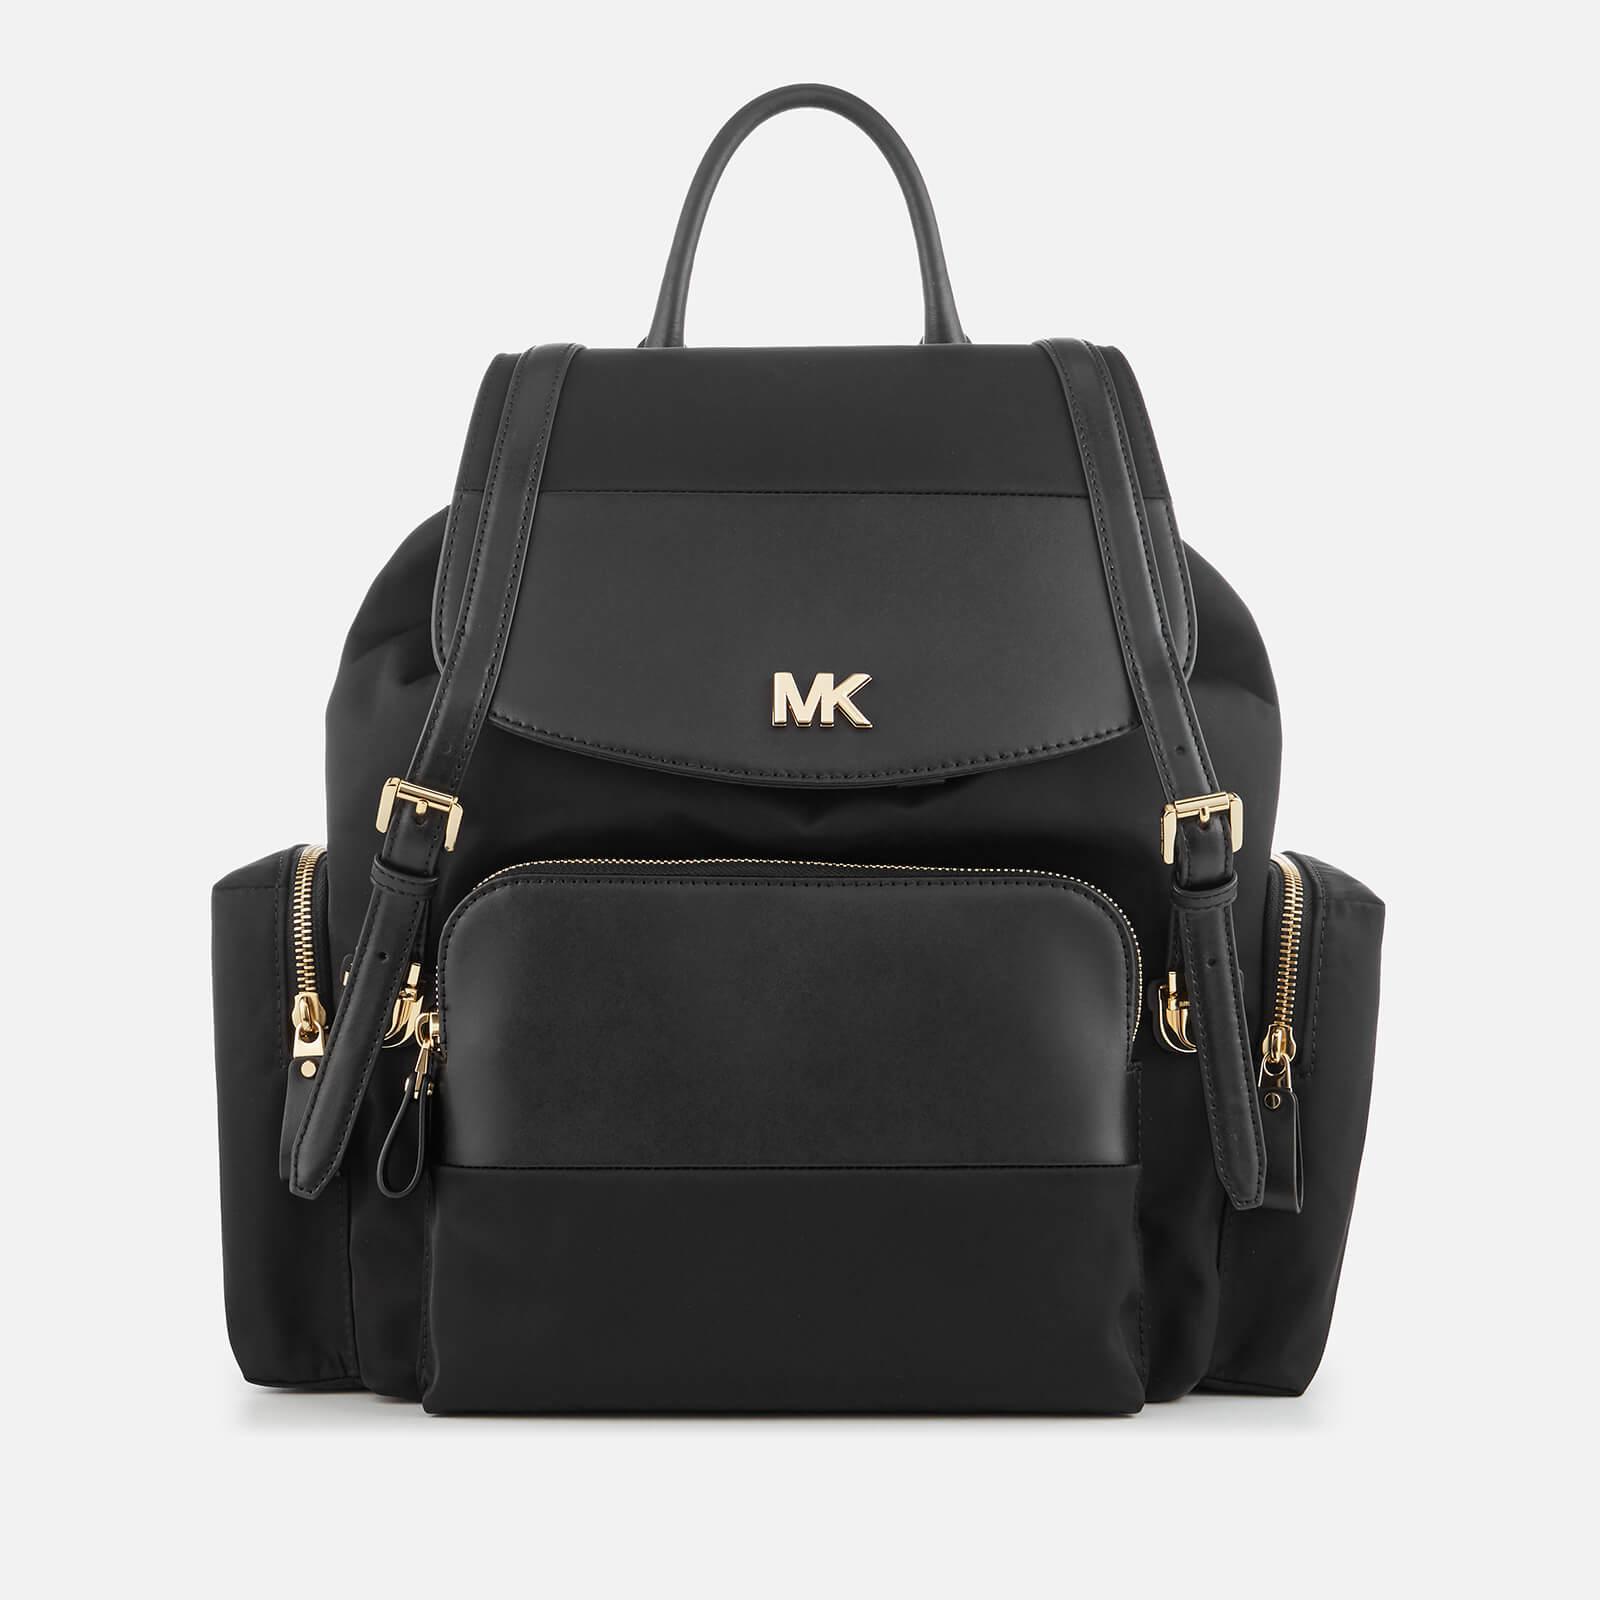 mk changing bag